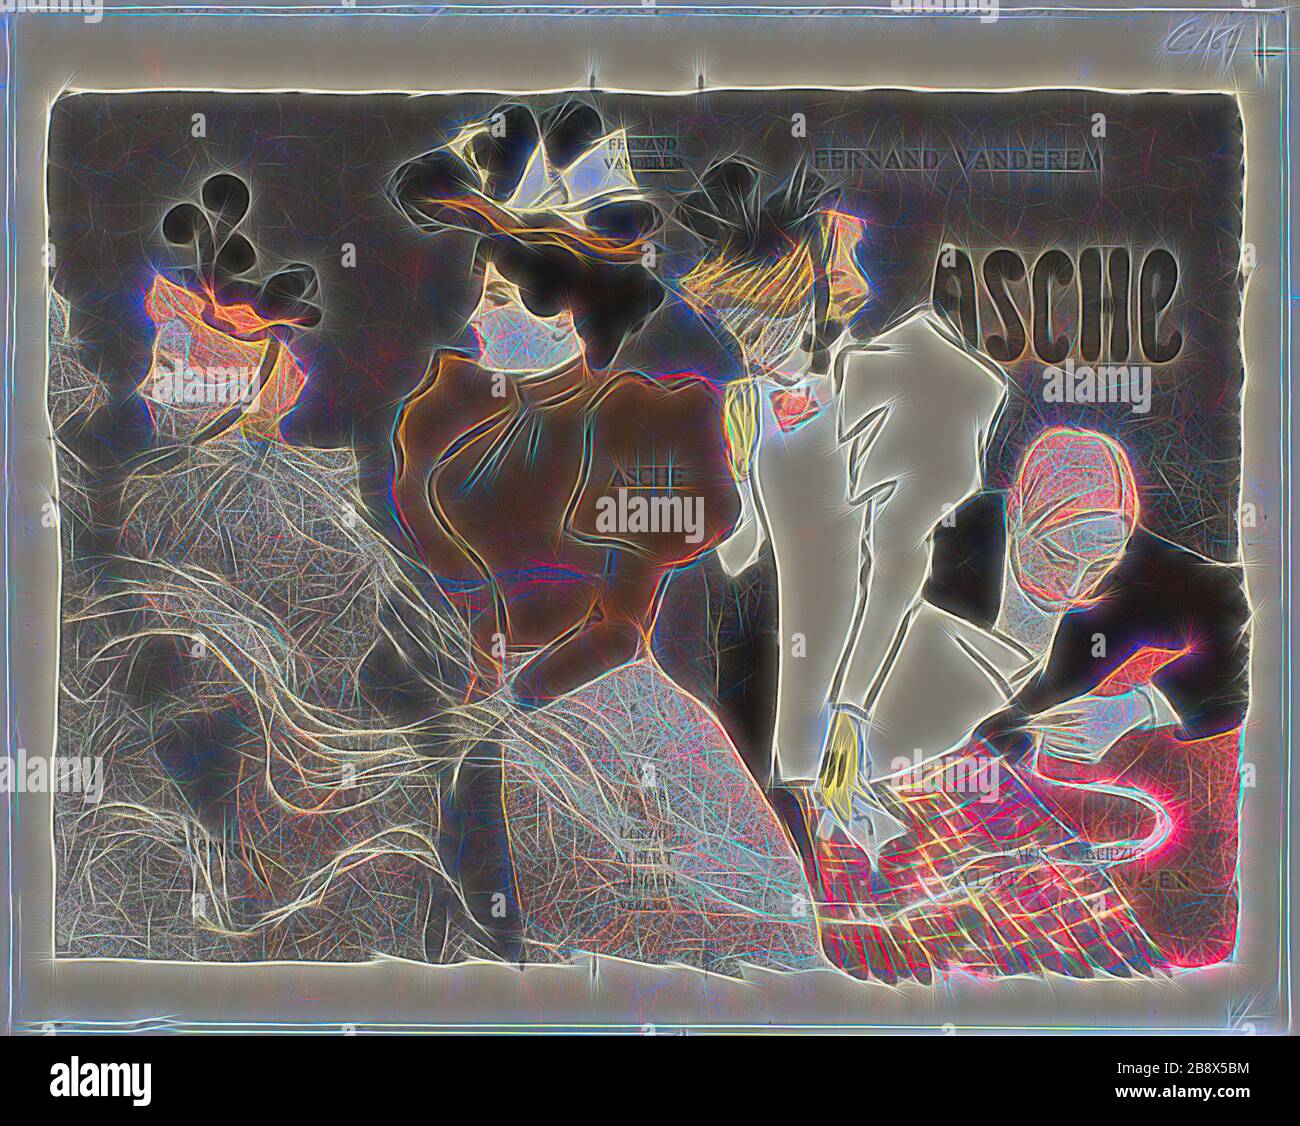 Asche, 1895, Théophile-Alexandre Steinlen (français, né en Suisse, 1859-1923), imprimé par Eugène Verneau, publié par Albert Langen (Paris et Leipzig), France, Lithographe en noir, gris, brun, orange et jaune sur papier ivoire wove, 208 × 267 mm (image, sans marque d'enregistrement incluse), 226 × 282 mm (), repensé par Gibon, conception d'un brillant chaleureux et joyeux de la luminosité et des rayons de lumière radiance. L'art classique réinventé avec une touche moderne. La photographie inspirée du futurisme, qui embrasse l'énergie dynamique de la technologie moderne, du mouvement, de la vitesse et révolutionne la culture. Banque D'Images